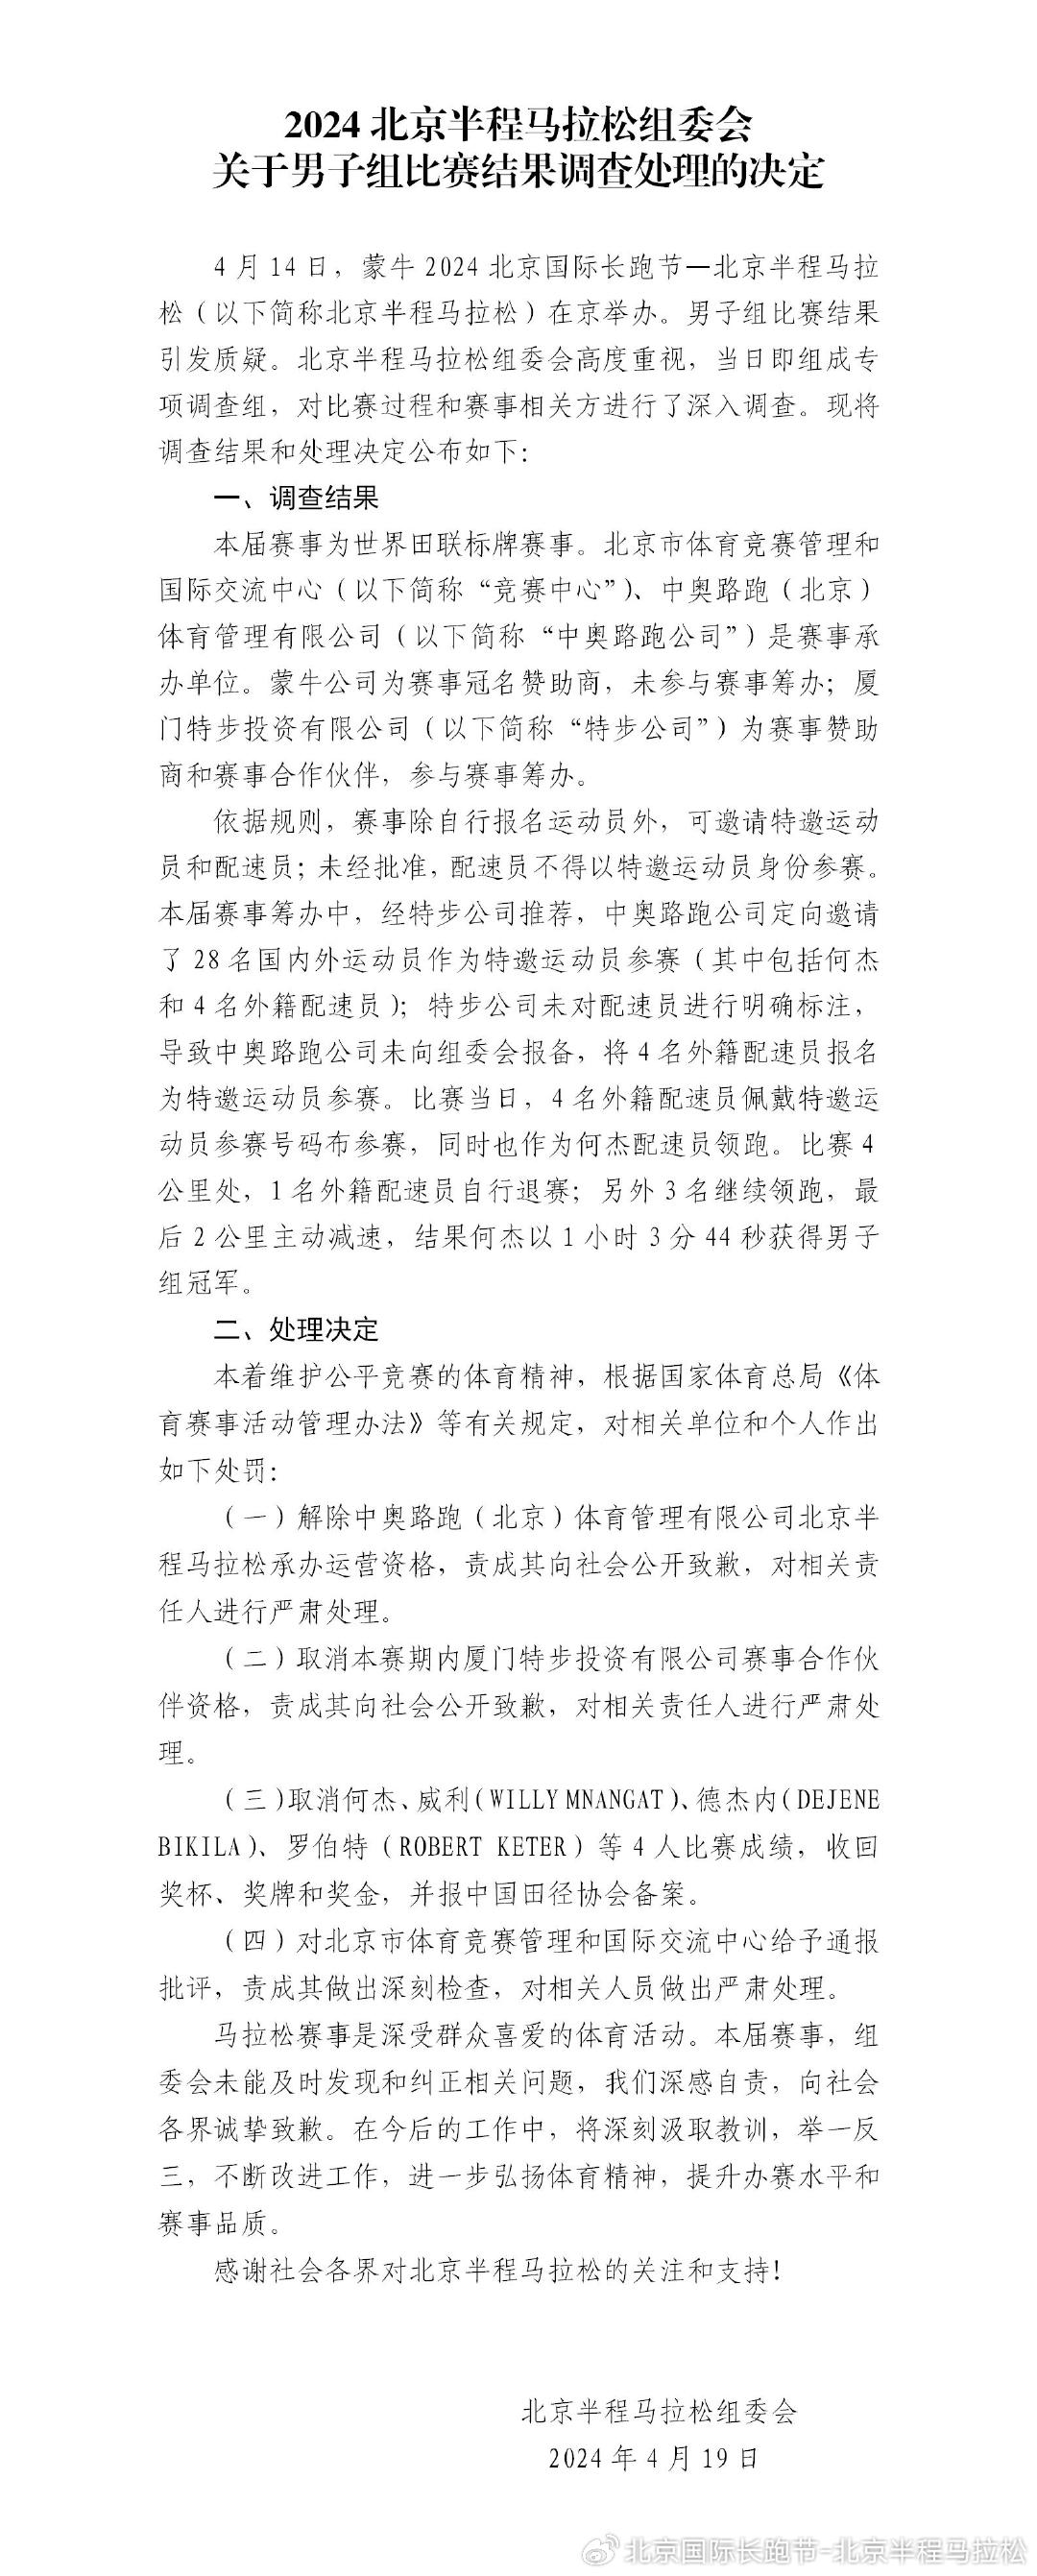 北京半程马拉松组委会公布男子组比赛调查处理结果